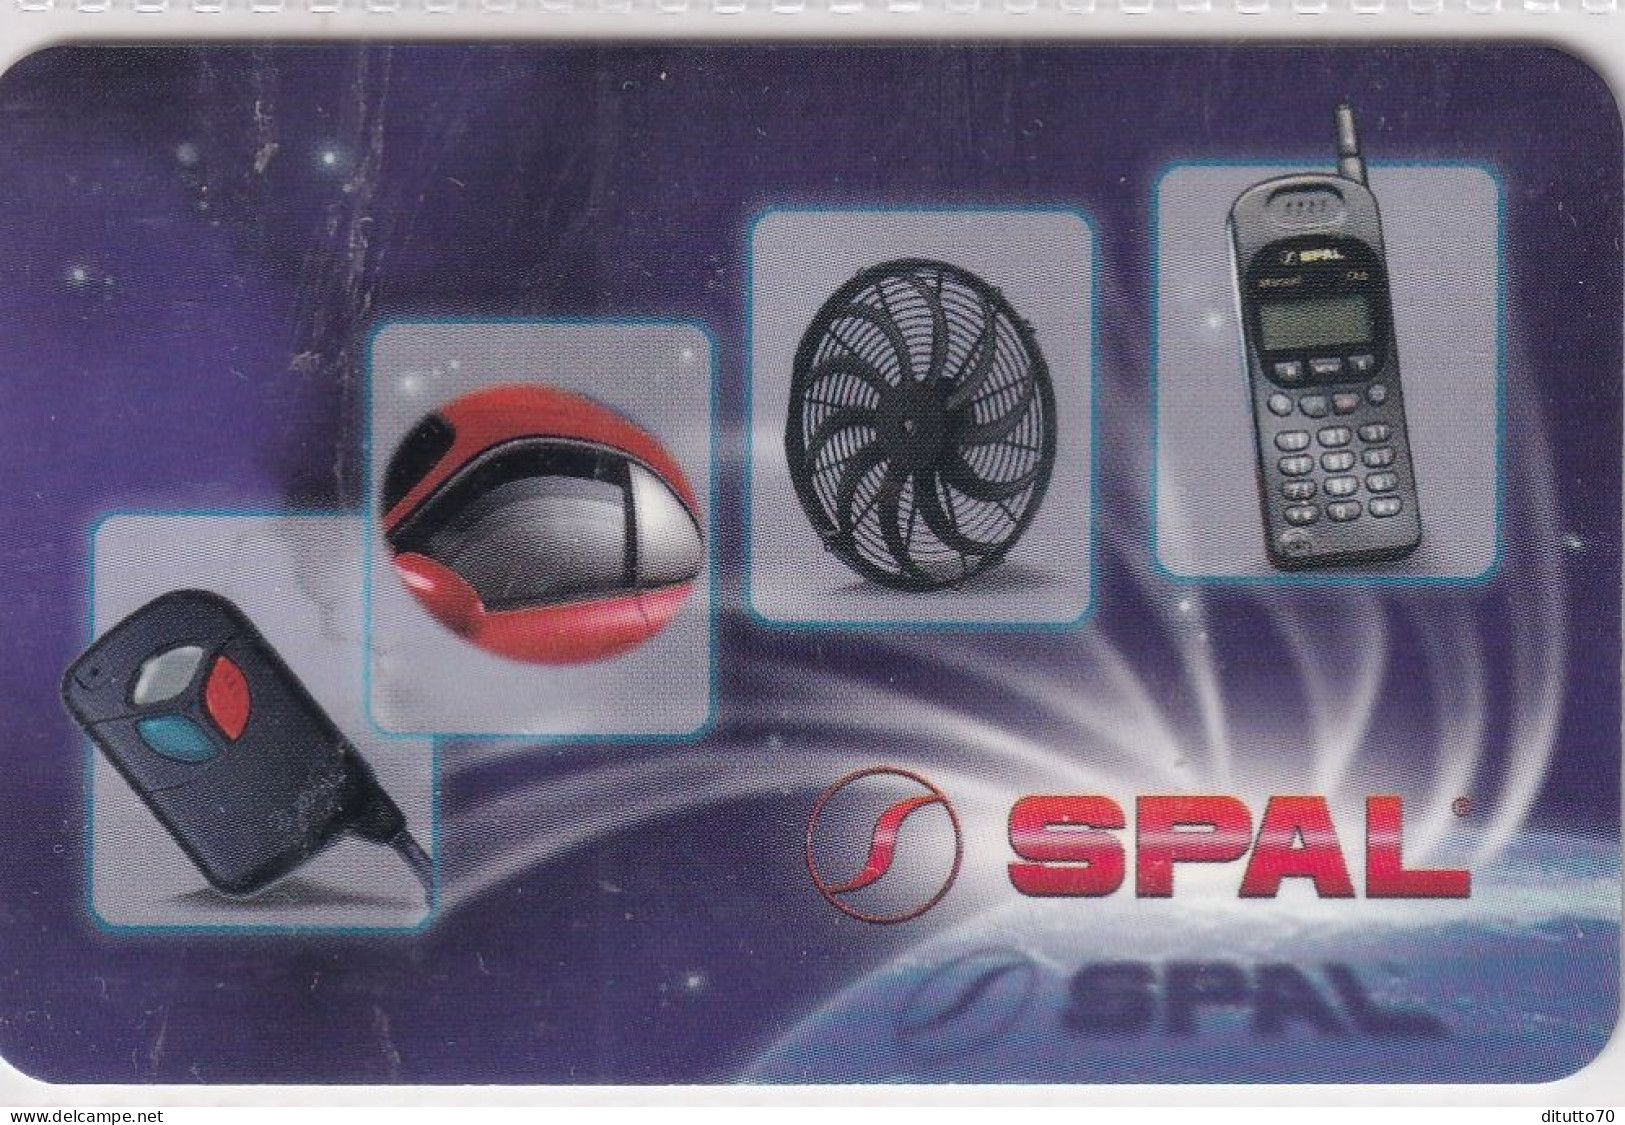 Calendarietto - Spal - Correggio - Anno 1998 - Kleinformat : 1991-00